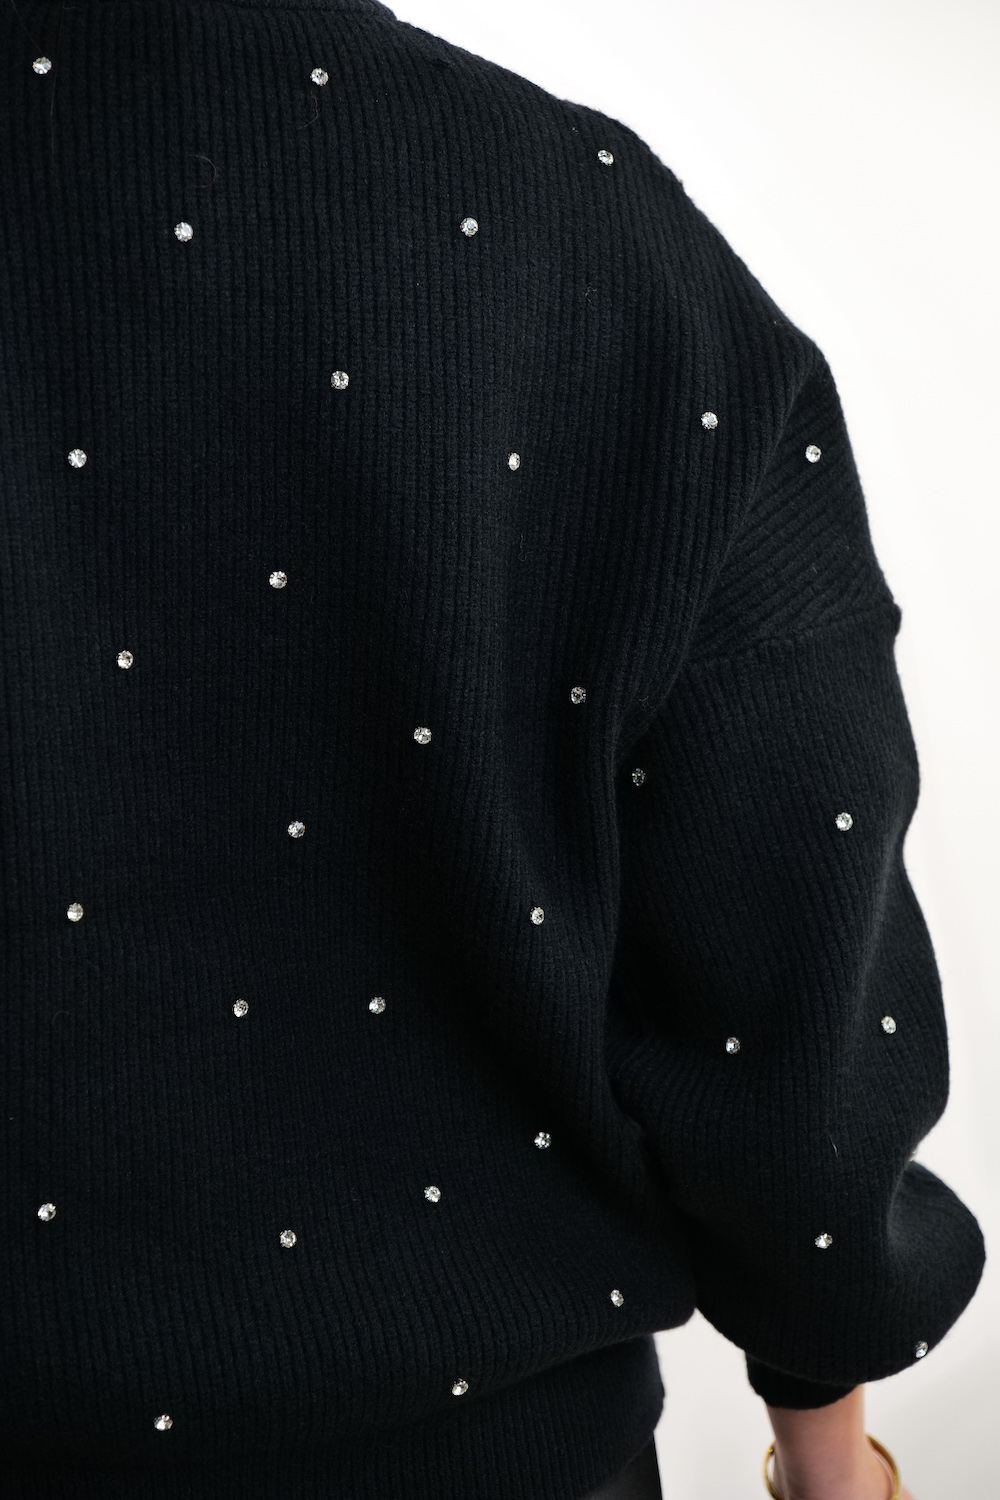 Чорний светр з кришталиками сваровські італійського бренду  Motel